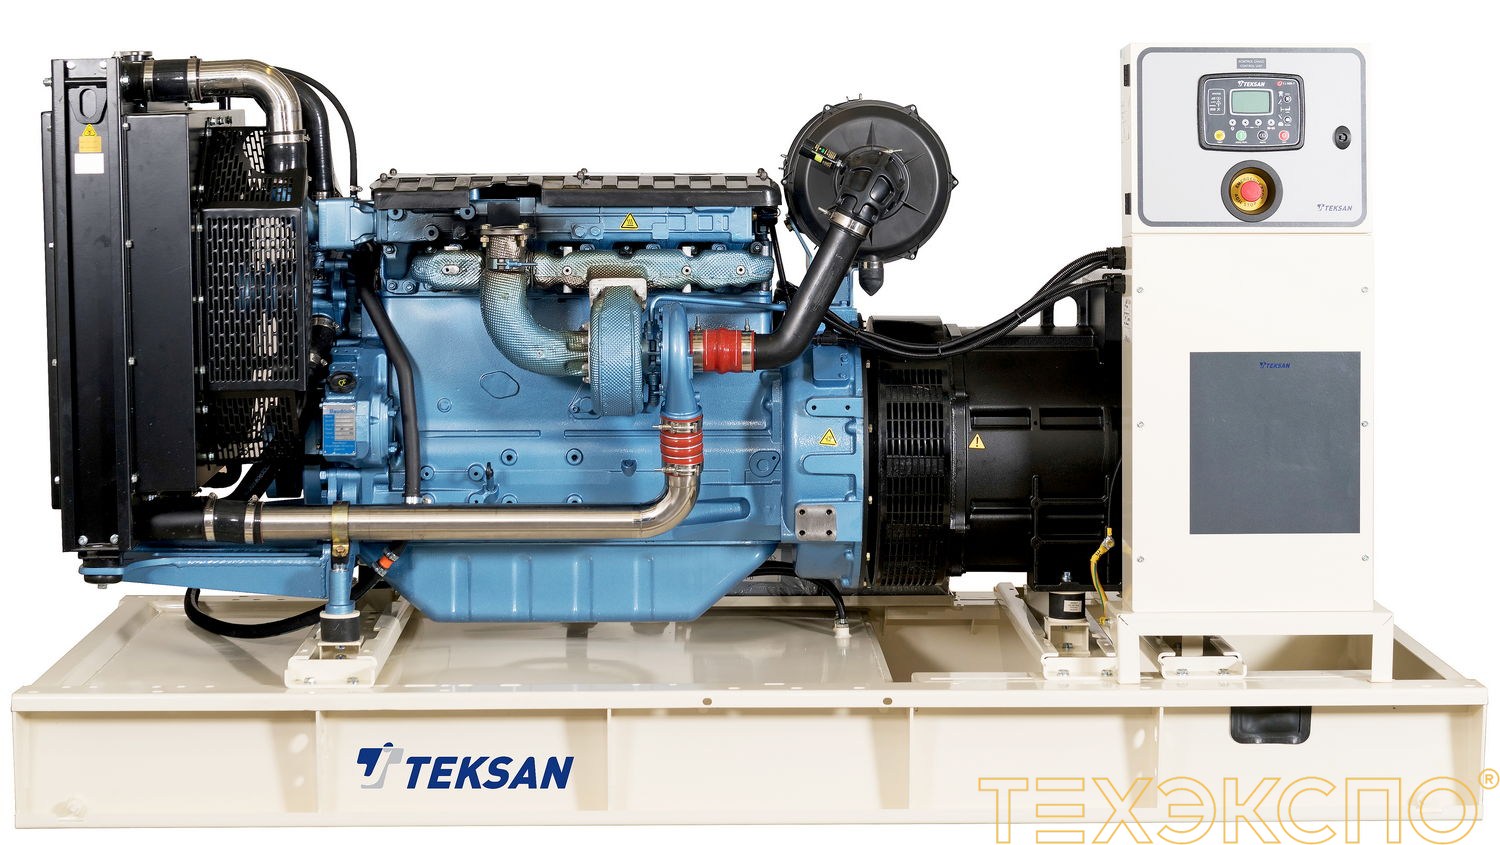 Teksan TJ170BD5C - ДЭС 123 кВт в Санкт-Петербурге | Дизельная электростанция в Техэкспо